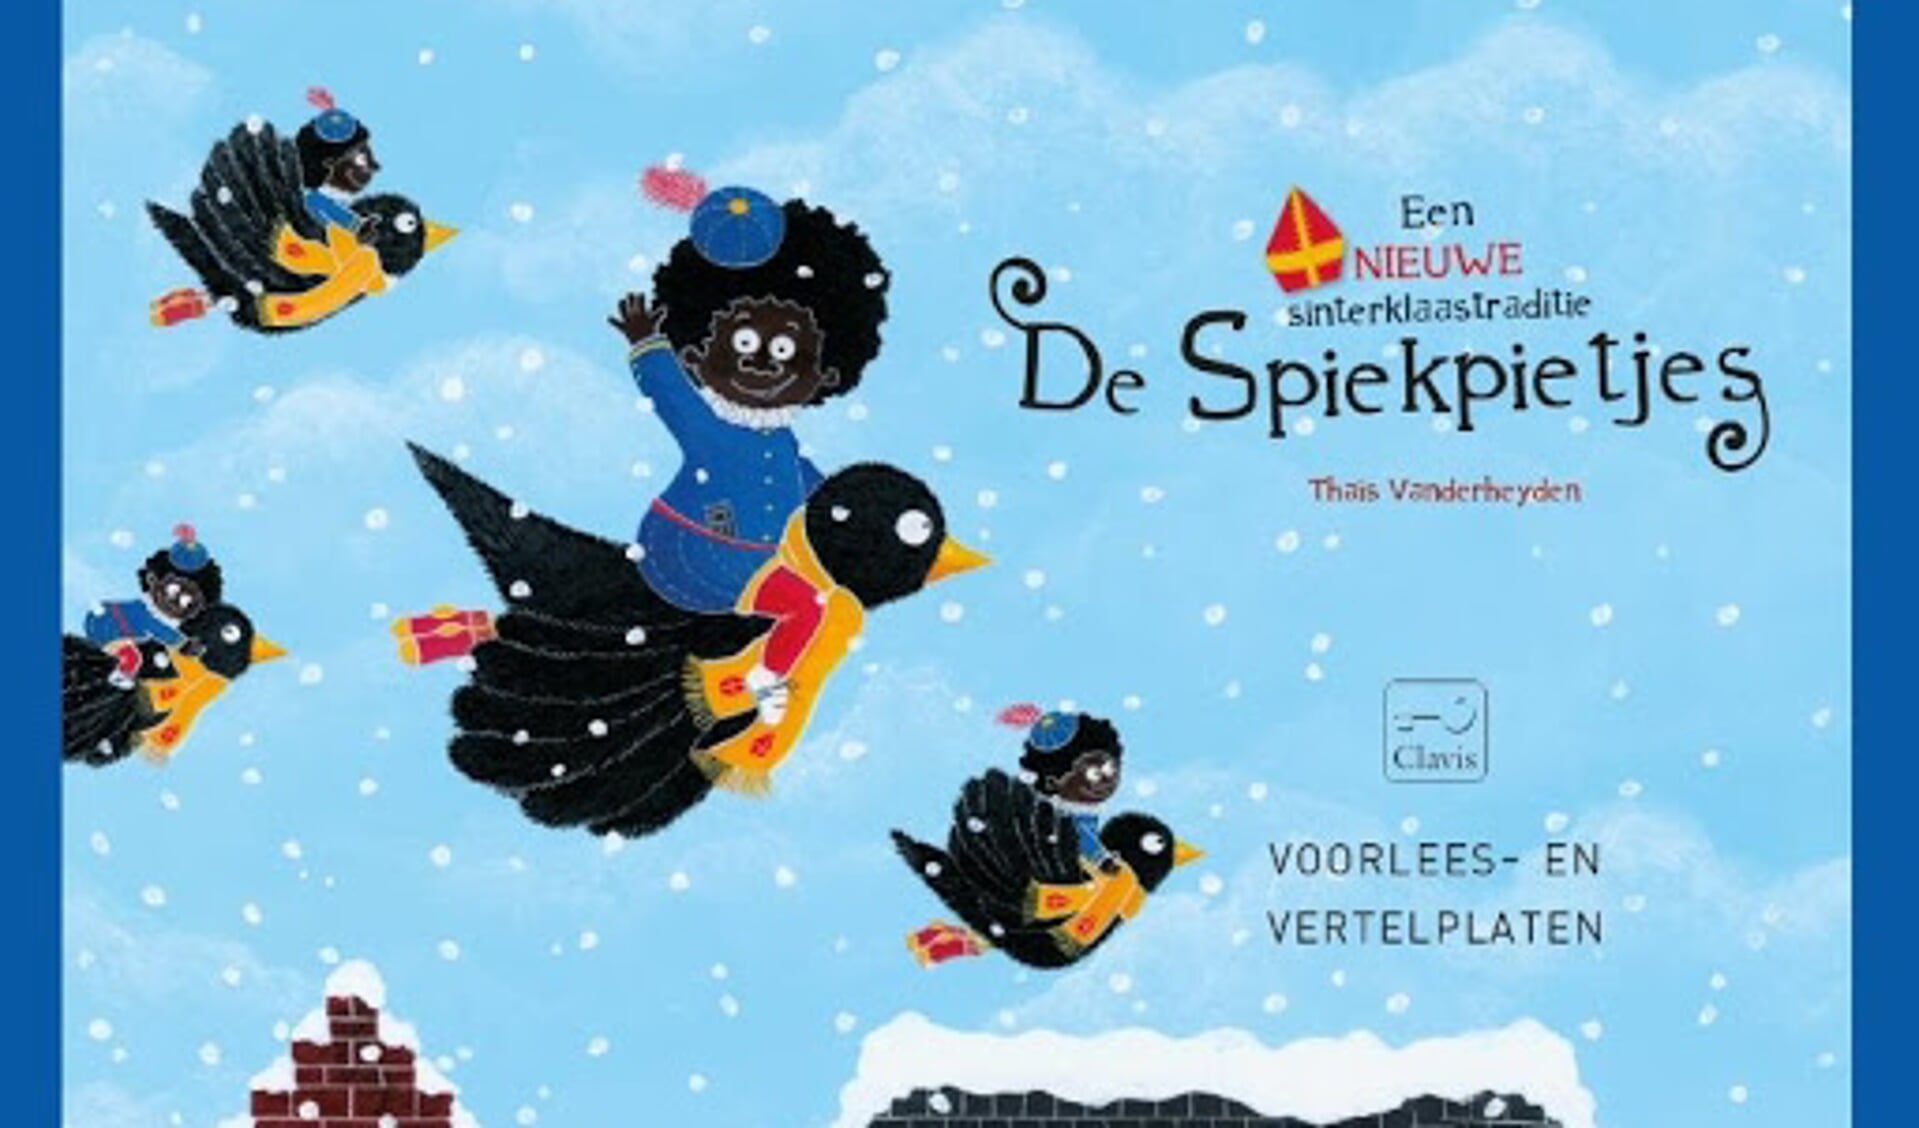 'Dit boek is in 2018 uitgekomen met het oogmerk om aan Sinterklaas een moderne twist te geven, maar helaas is dit door de illustraties een gemiste kans.'